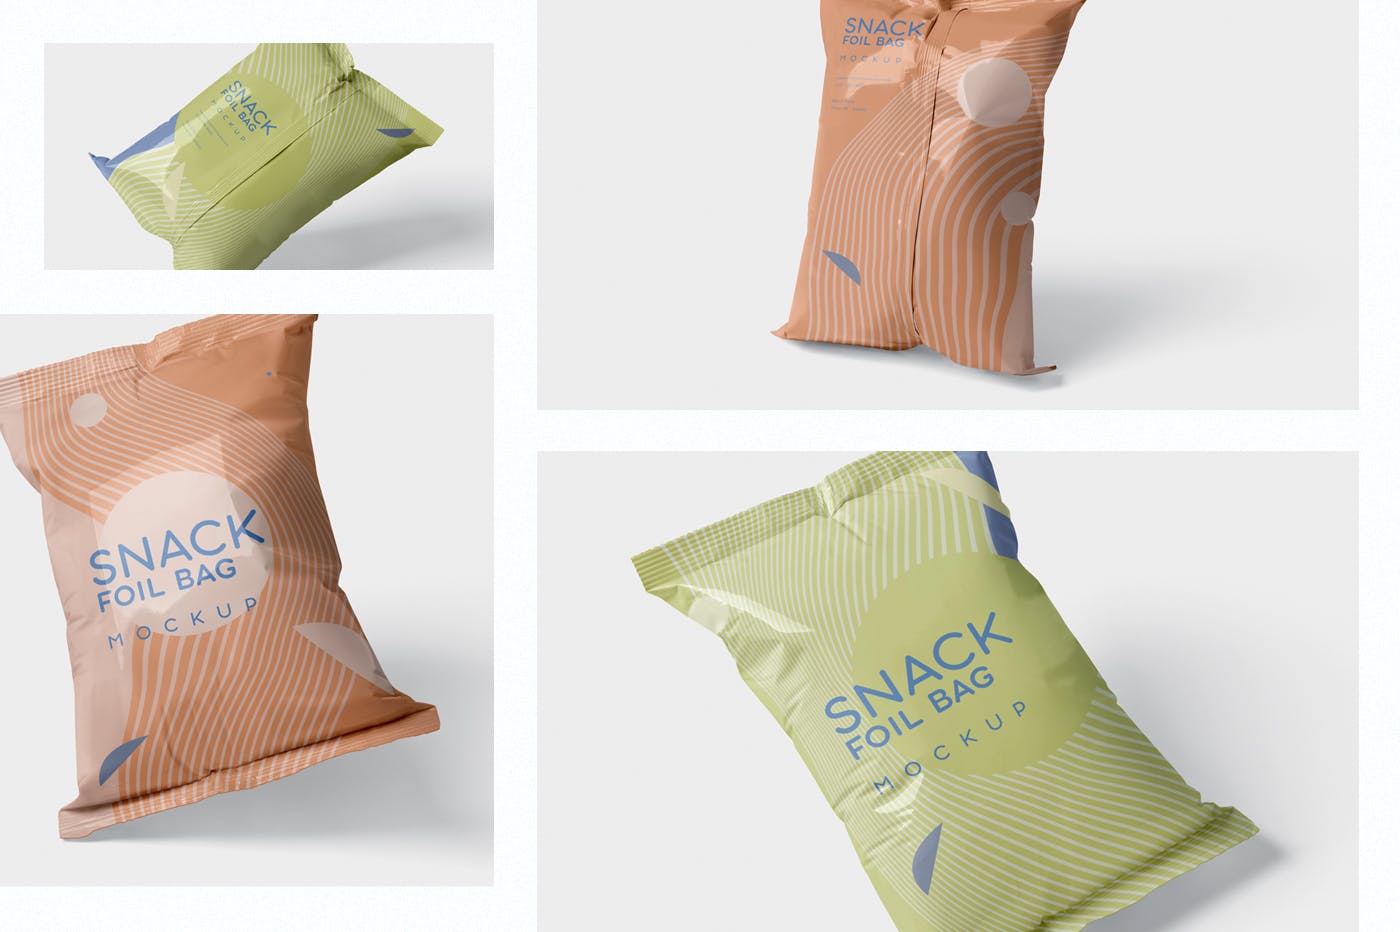 小吃零食铝箔袋/塑料包装袋设计图第一素材精选 Snack Foil Bag Mockup – Plastic插图(1)